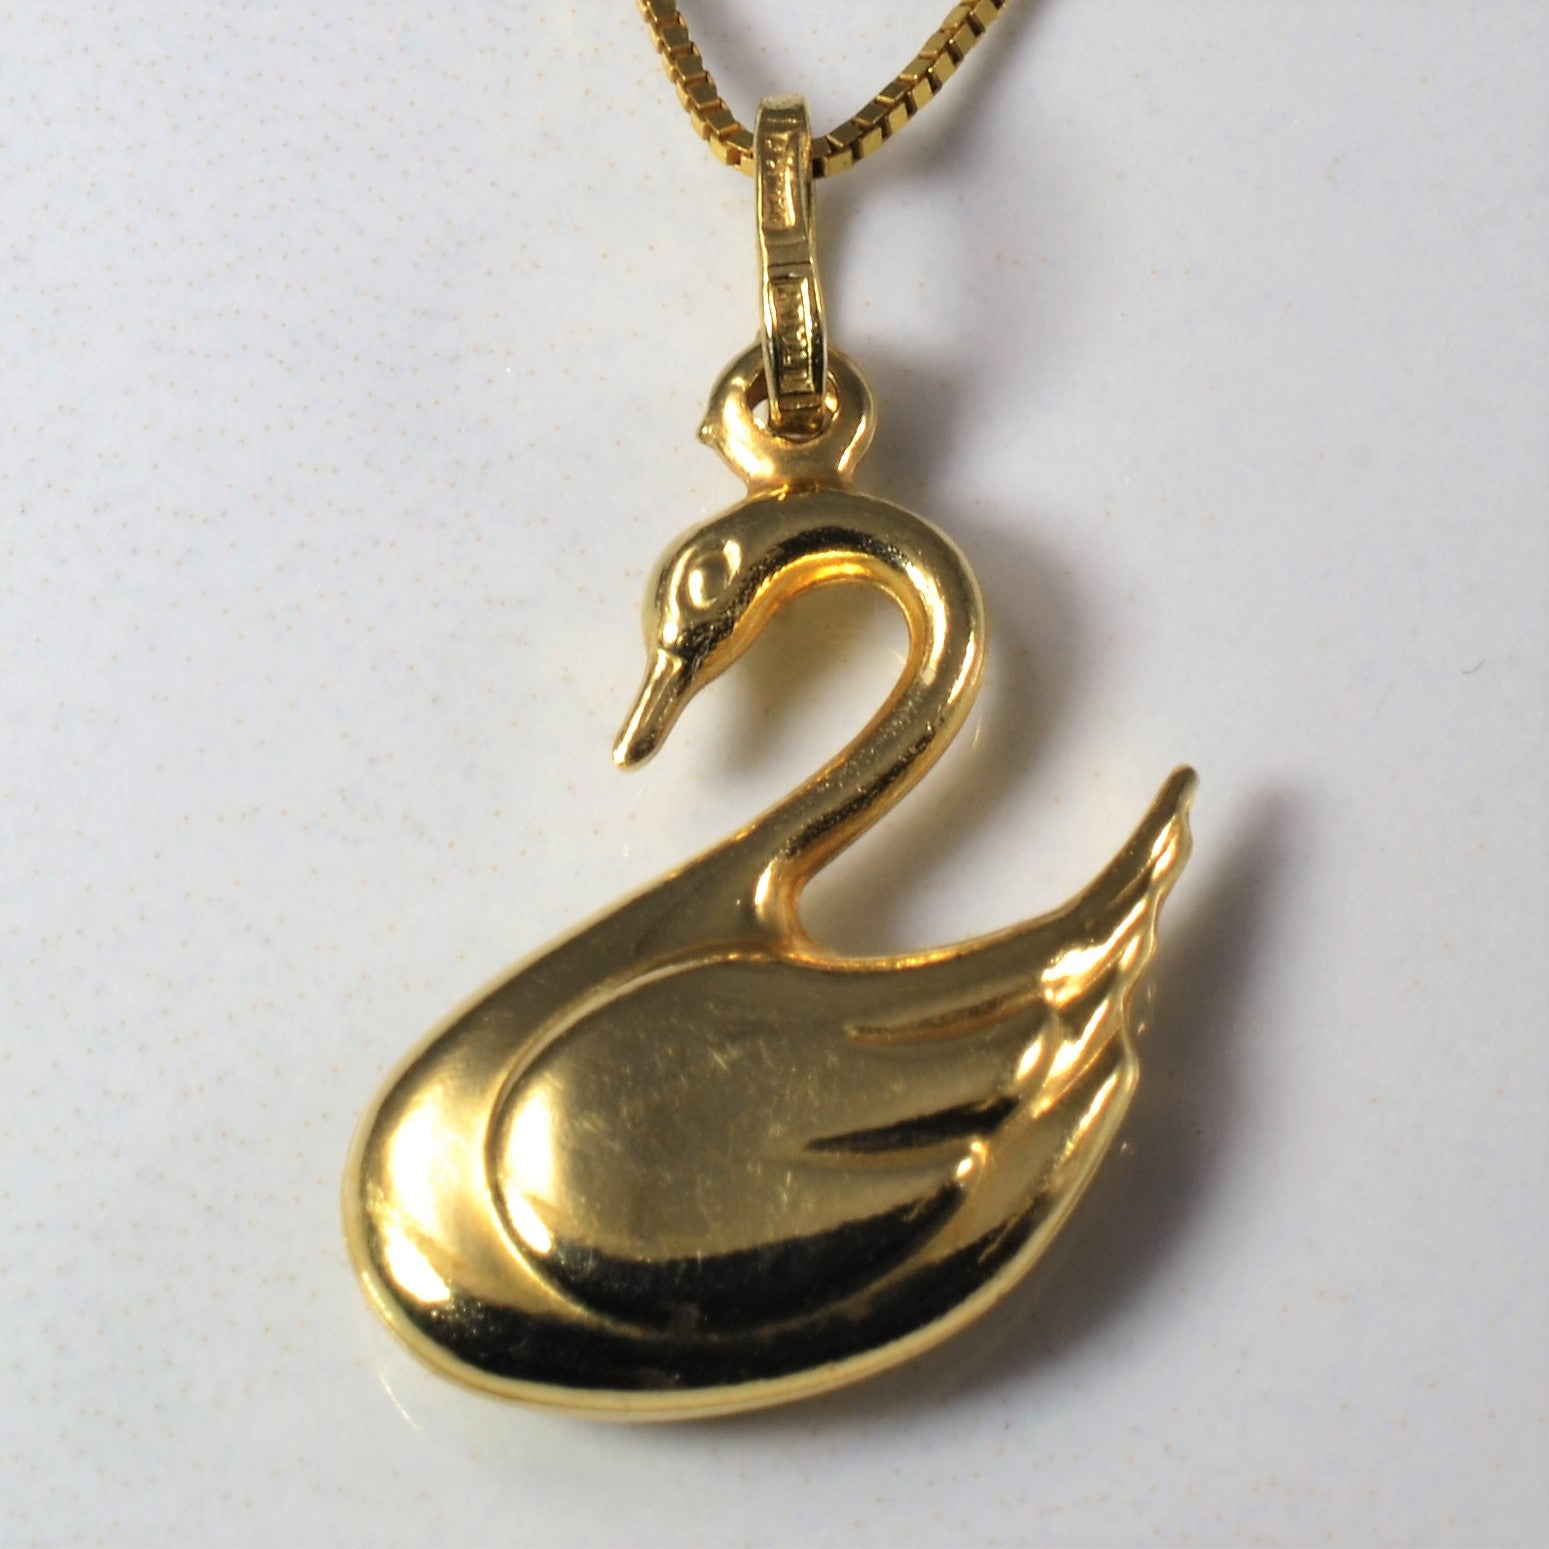 Swarovski Swan pendant, Swan, Black, Rose gold-tone plated | Swarovski